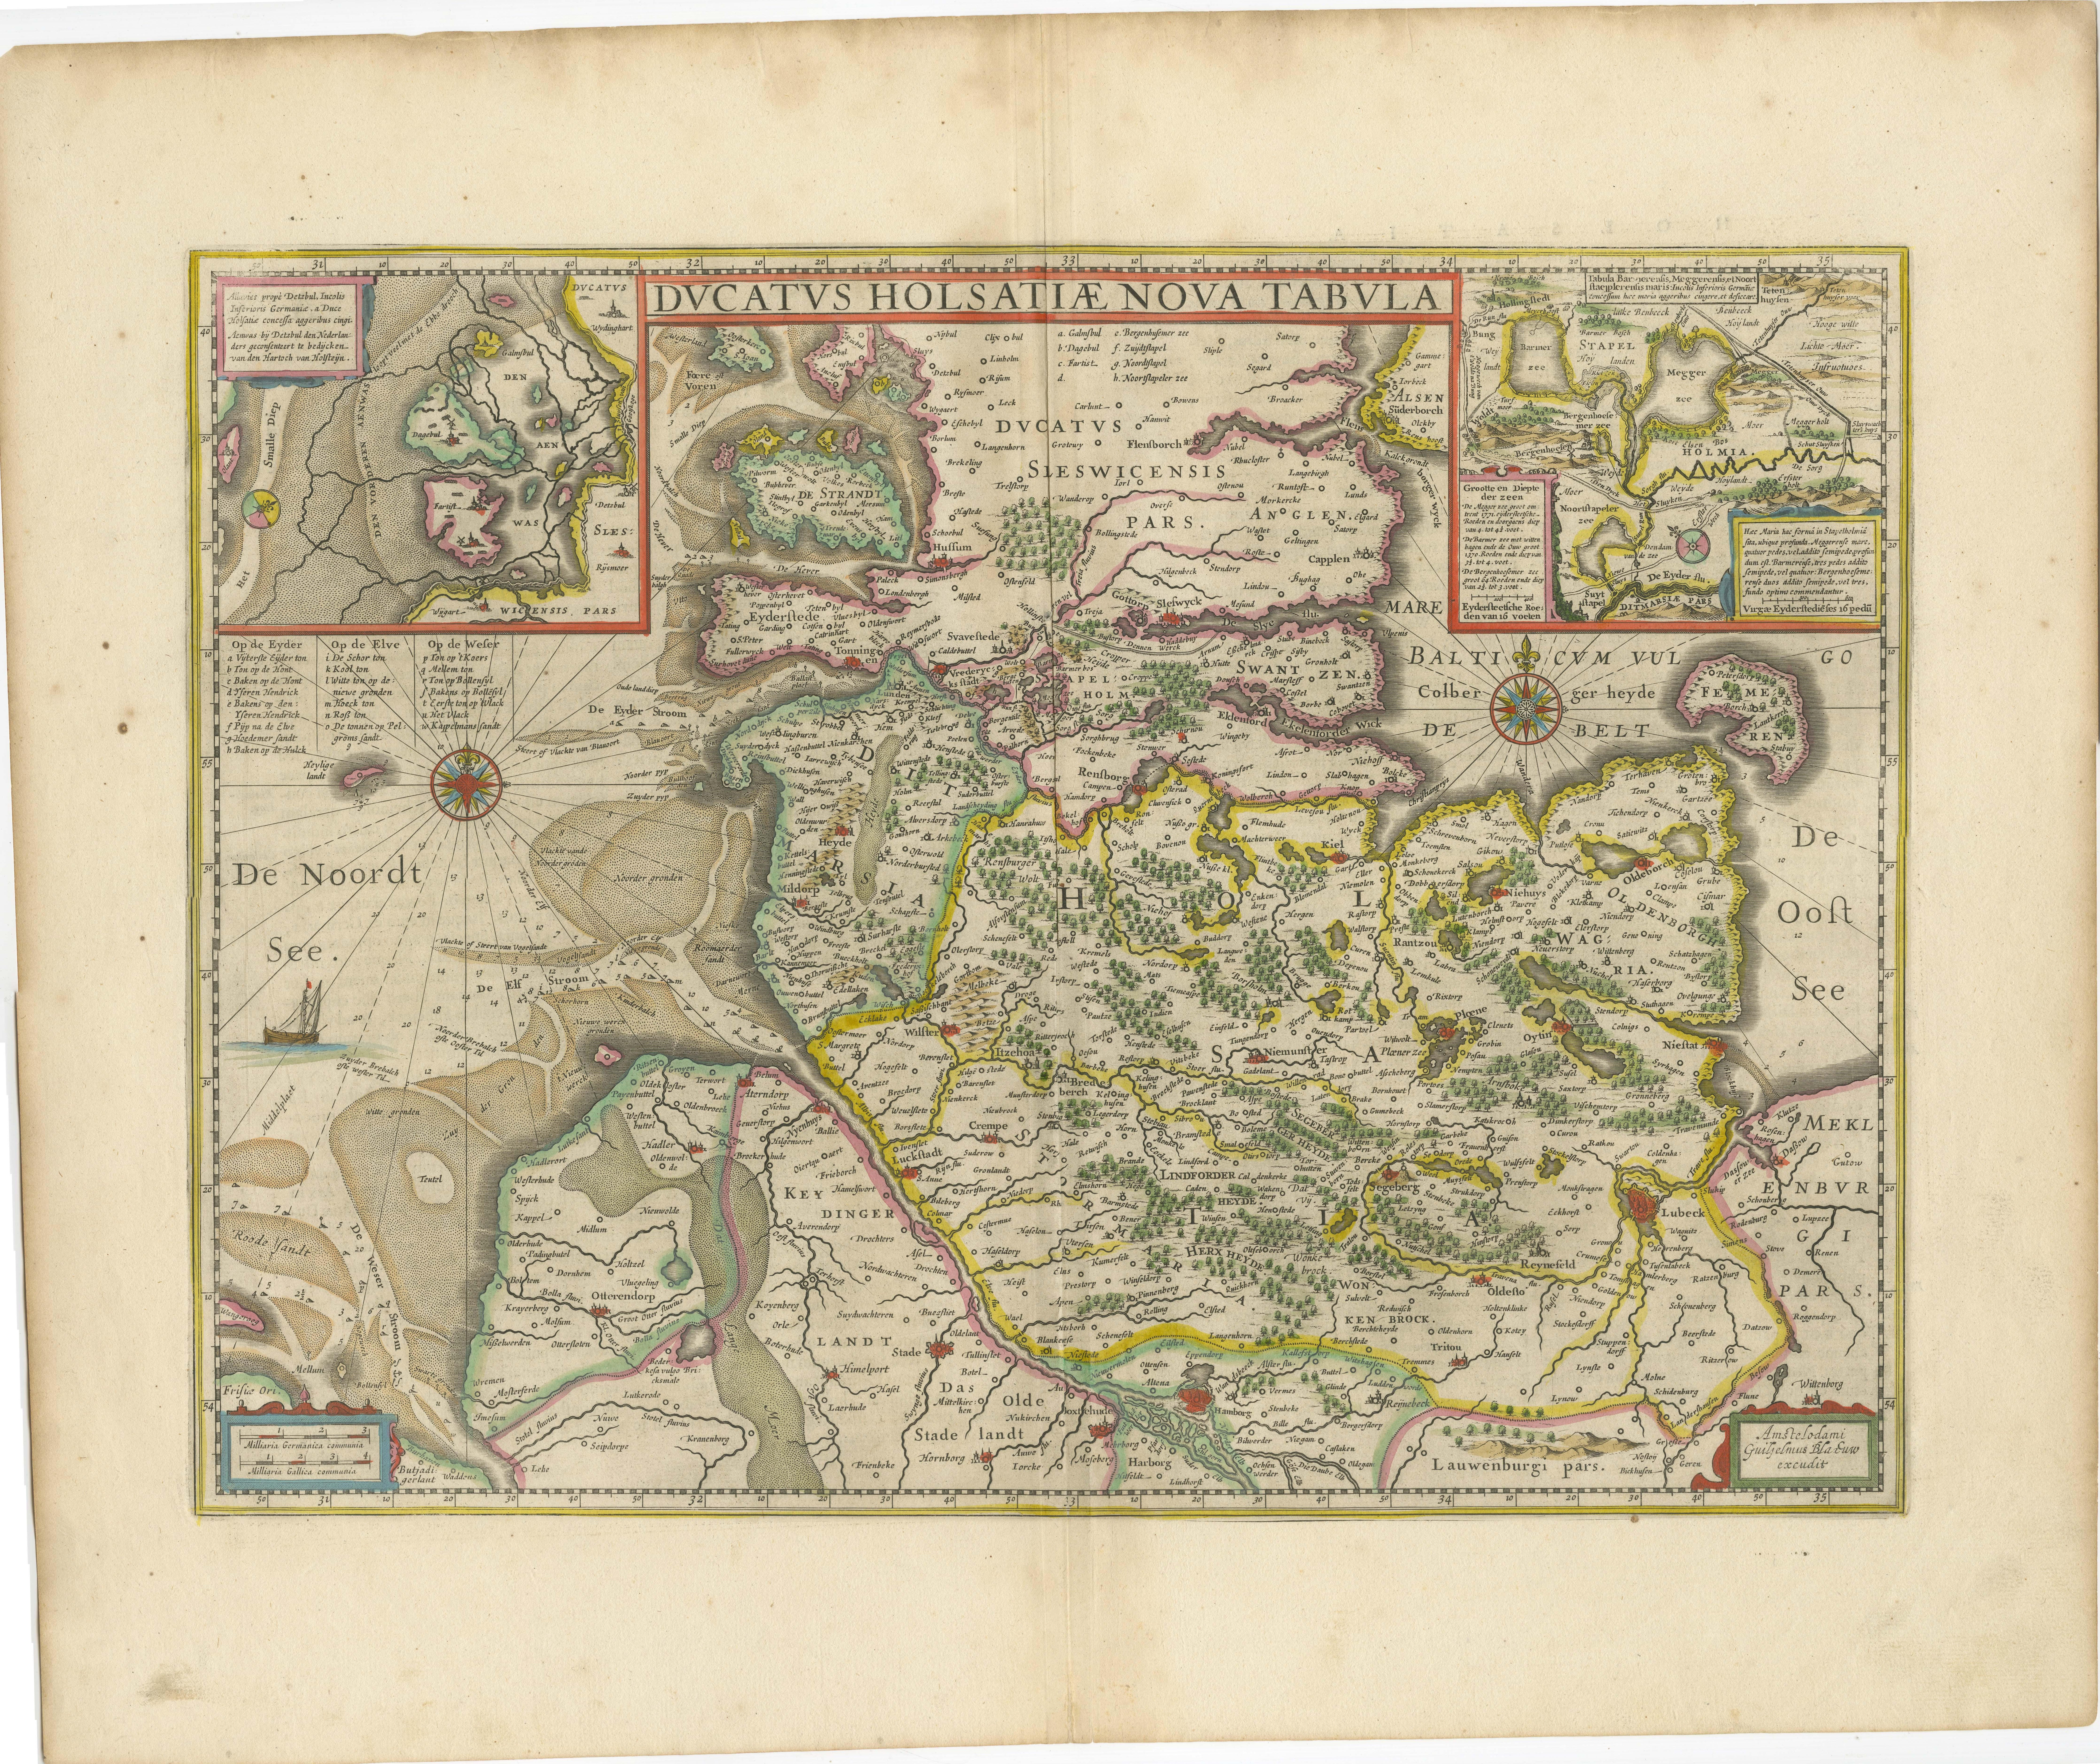 Antike Karte mit dem Titel 'Ducatus Holsatiae Nova Tabula'. Originale alte Karte des Herzogtums Holstein, des nördlichsten Territoriums des Heiligen Römischen Reiches, aus der Mitte des 17. Jahrhunderts. Im Norden liegt das dänische Herzogtum